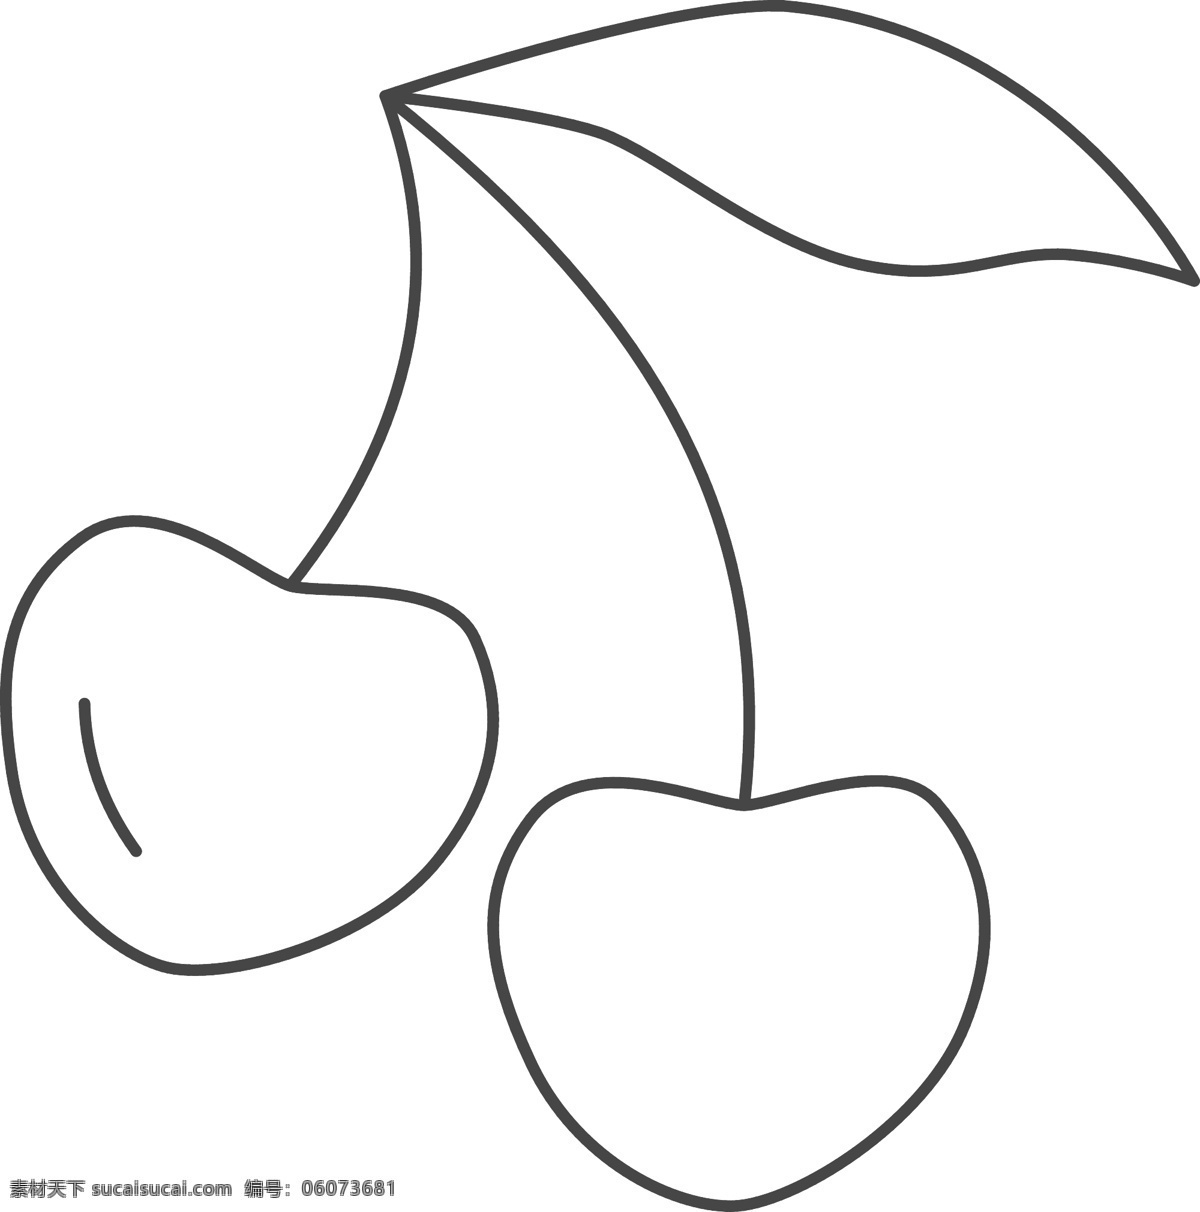 二 棵 樱桃 图标 免 抠 图 樱桃图案 二棵水果 水果图标 ui应用图标 网页图标 线条水果 黑色 约 线条 卡通图案 卡通插画